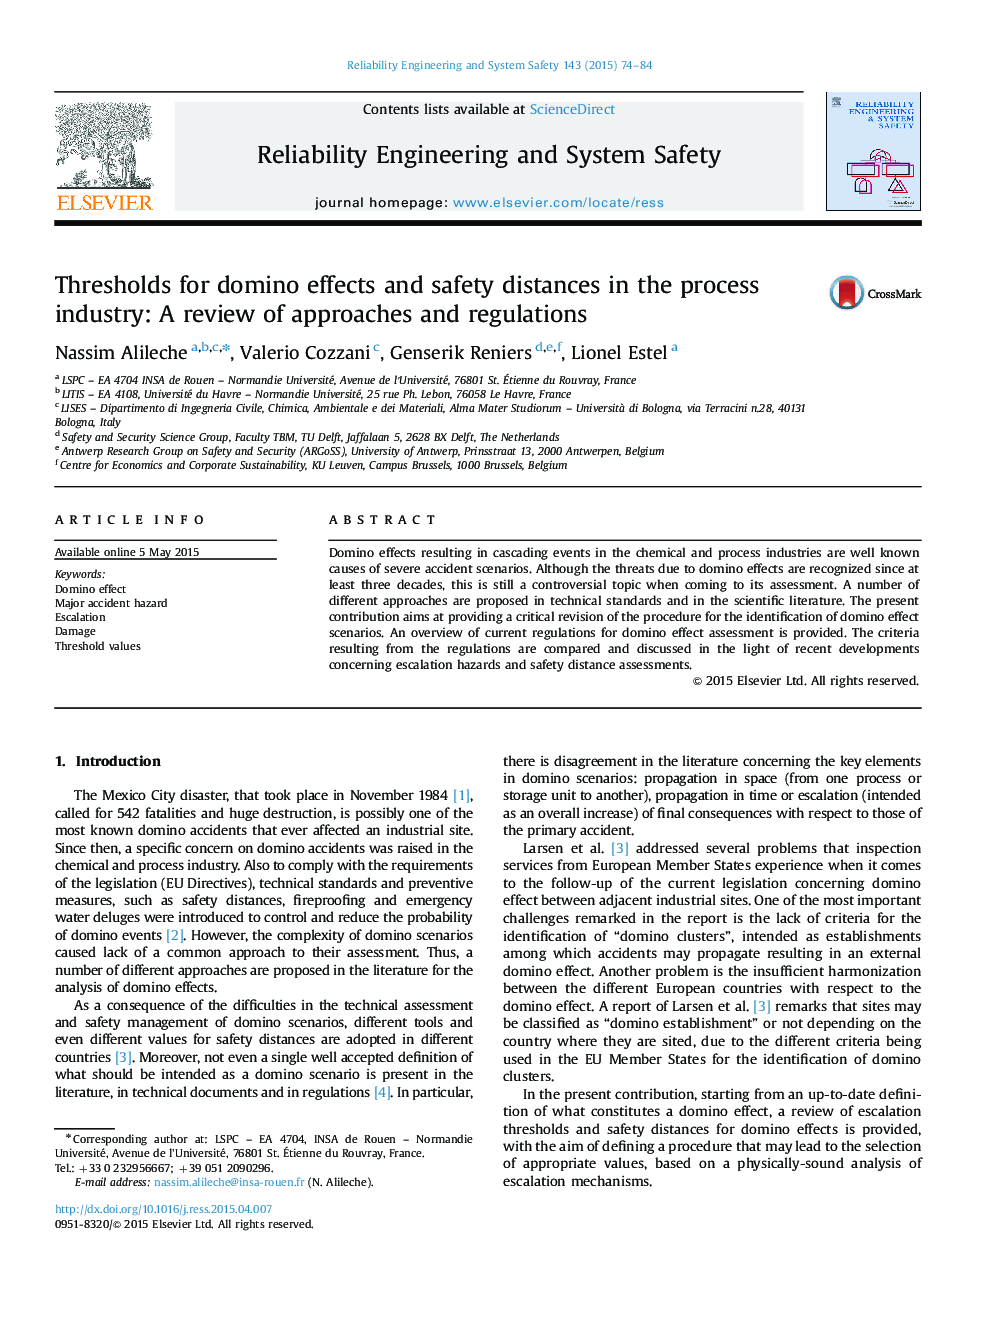 آستانه برای اثرات دومینو و فاصله های ایمنی در صنعت فرایند: بررسی رویکردها و مقررات 